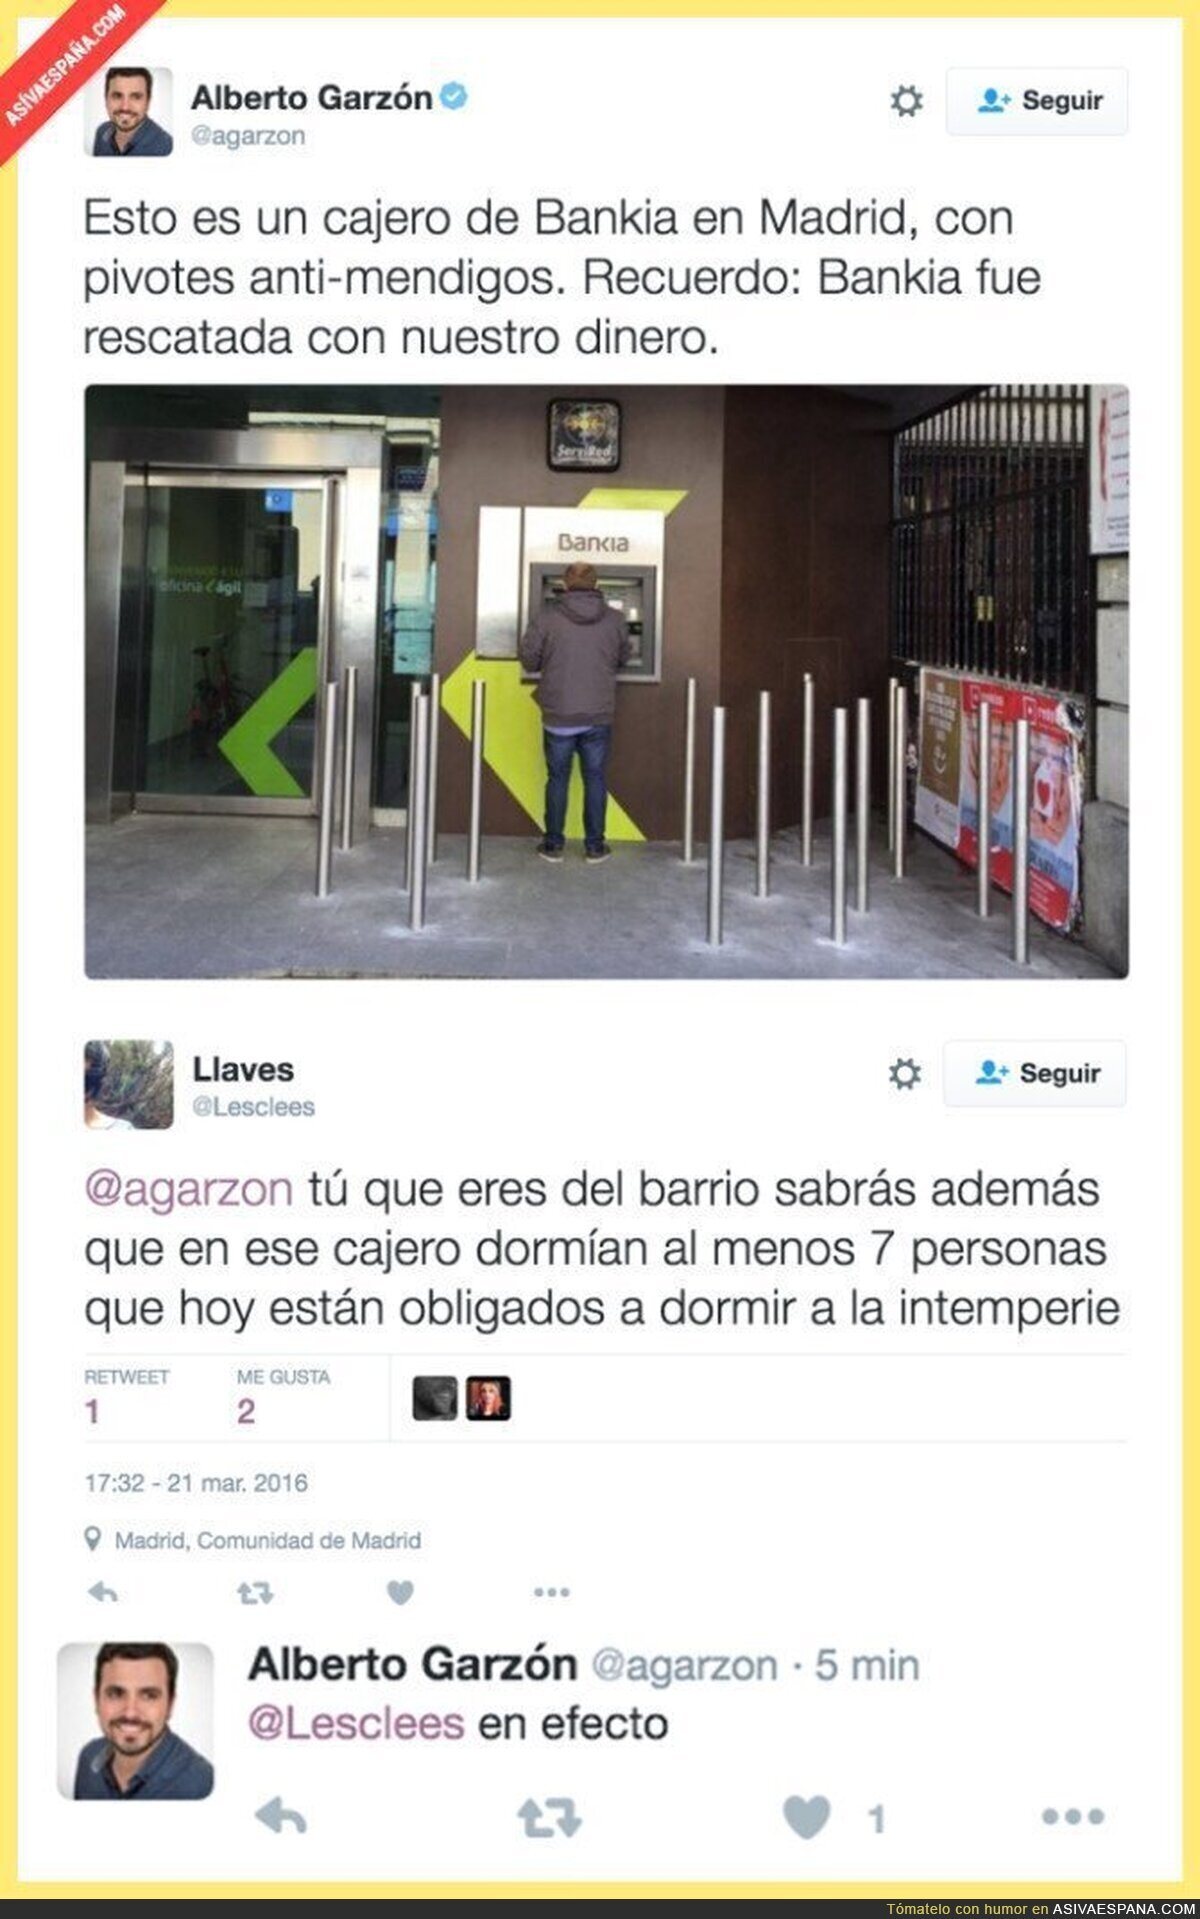 Pivotes anti-mendigos en Bankia. Lamentable es poco...